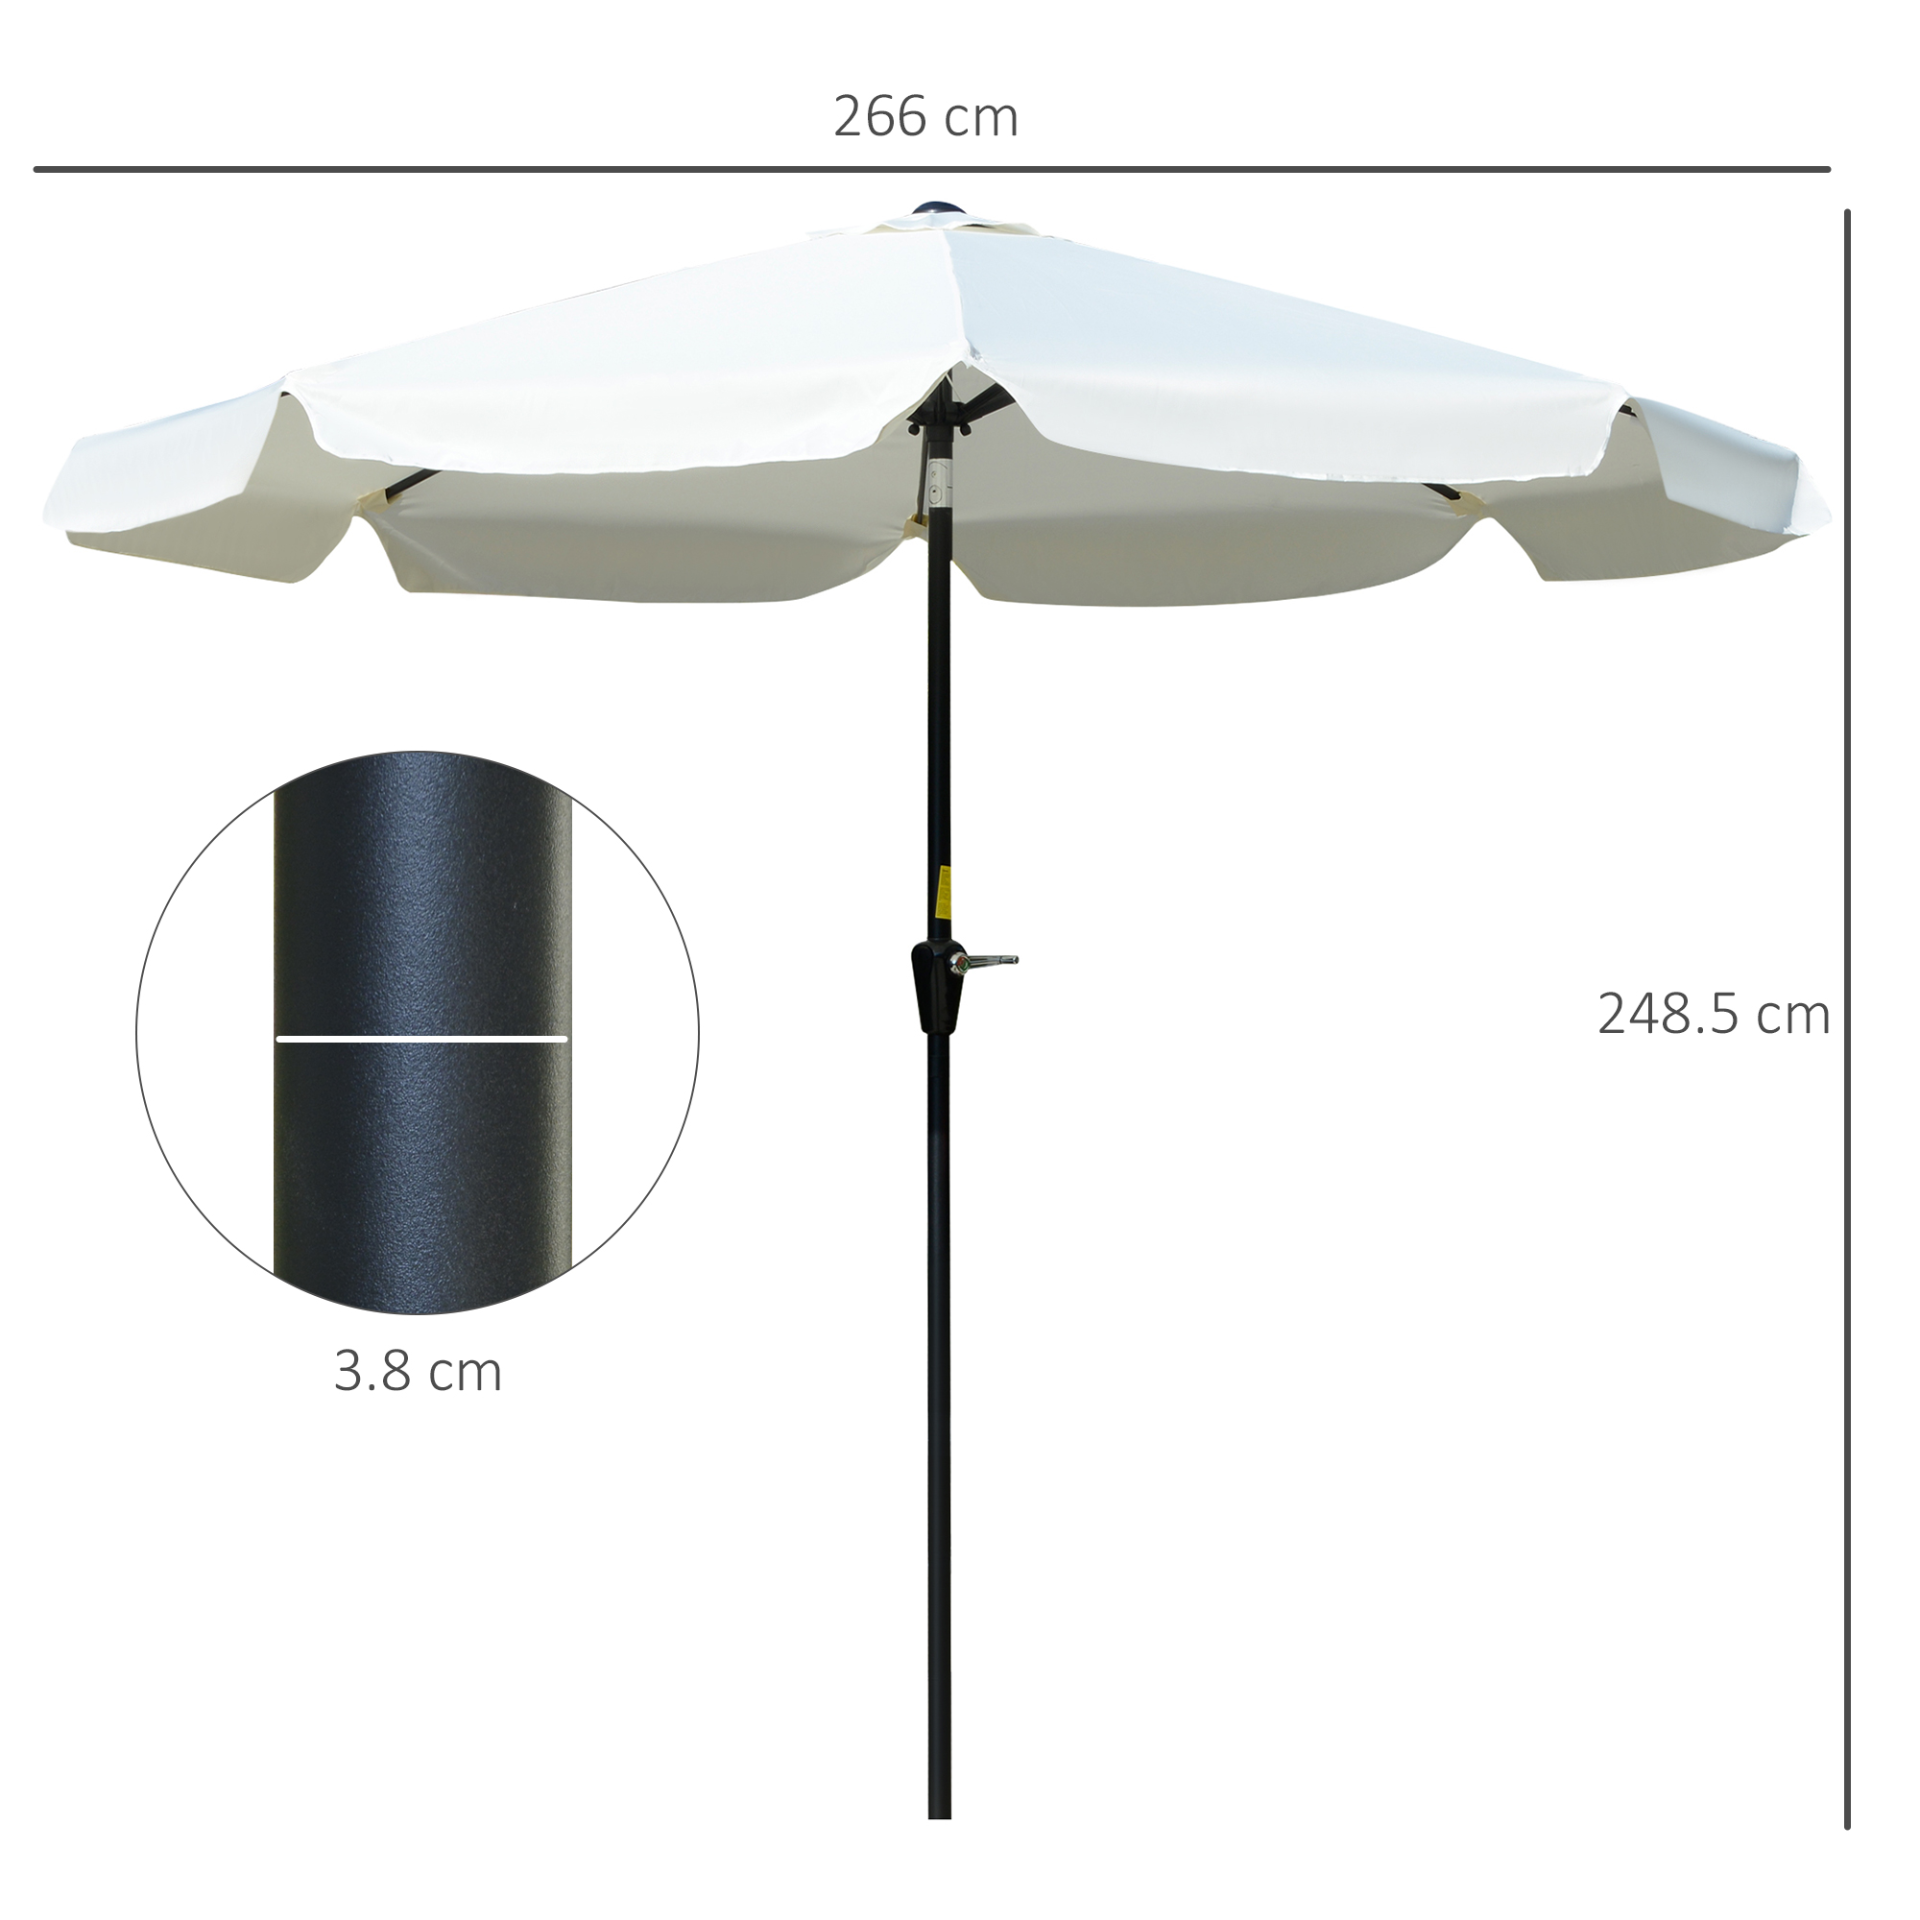 Outsunny 2.7m Patio Parasol Garden Umbrellas Outdoor Sun Shade Table Umbrella with Tilt, Crank, 8 Ribs, Ruffles, White